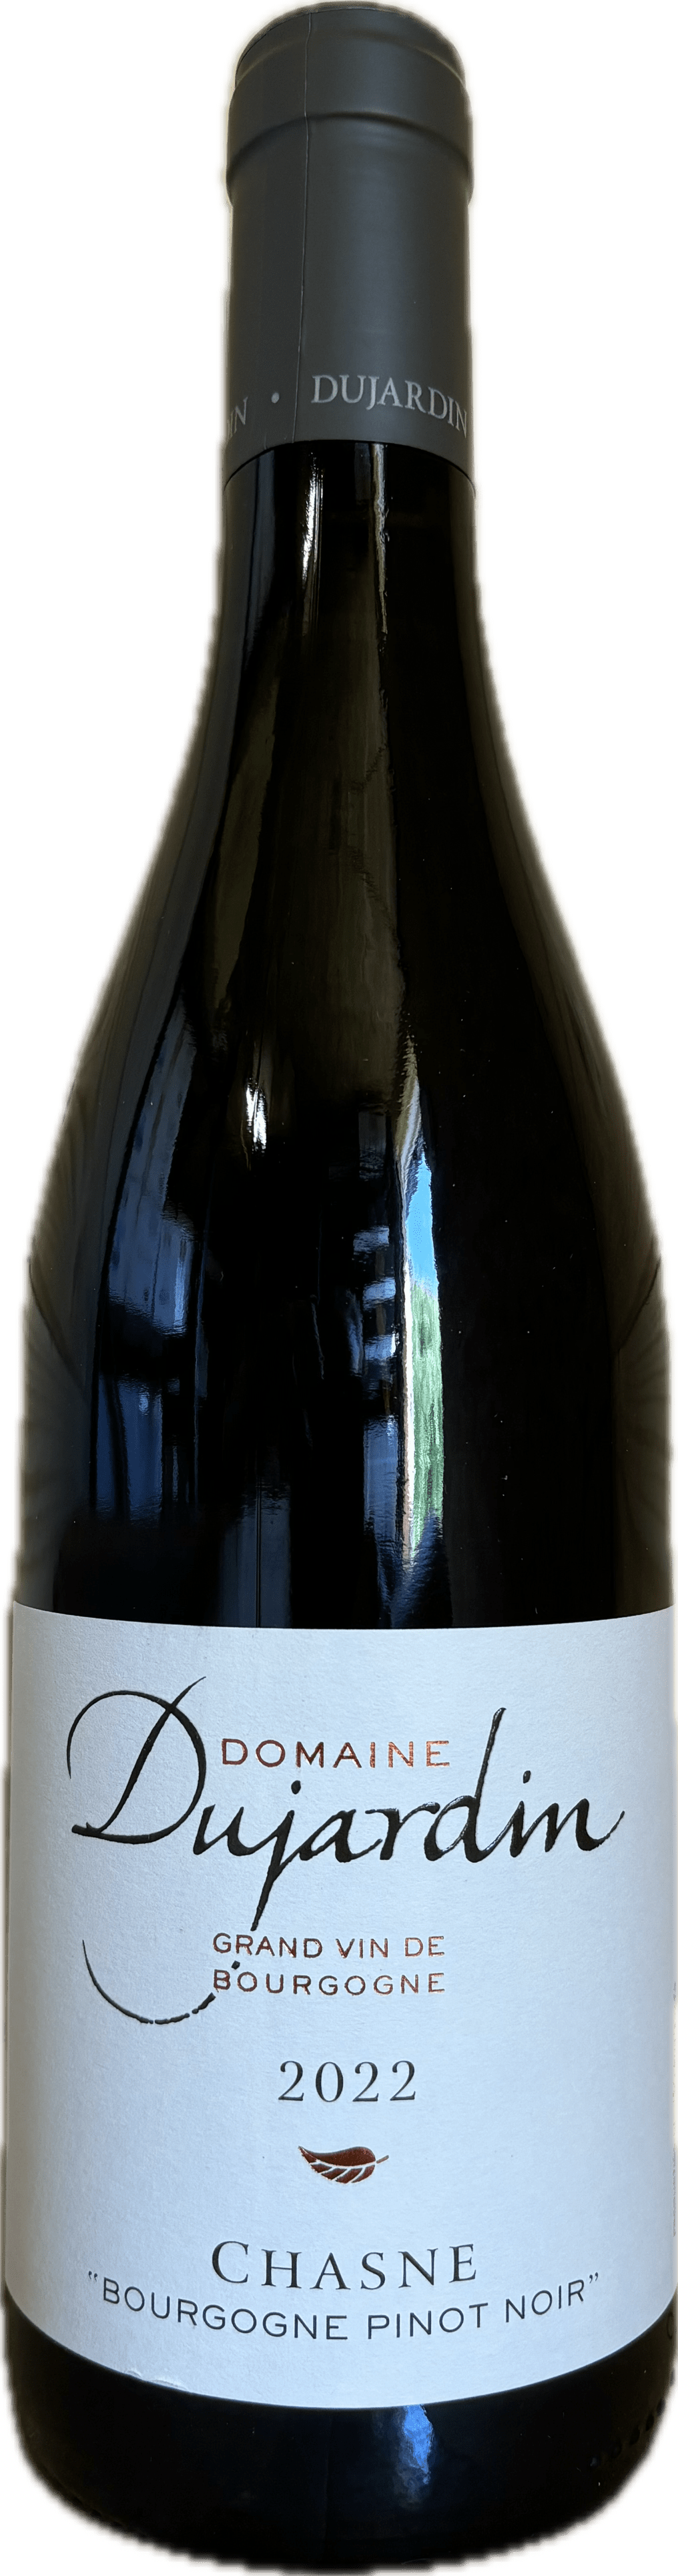 Domaine Dujardin Bourgogne Pinot Noir Chasne 2022